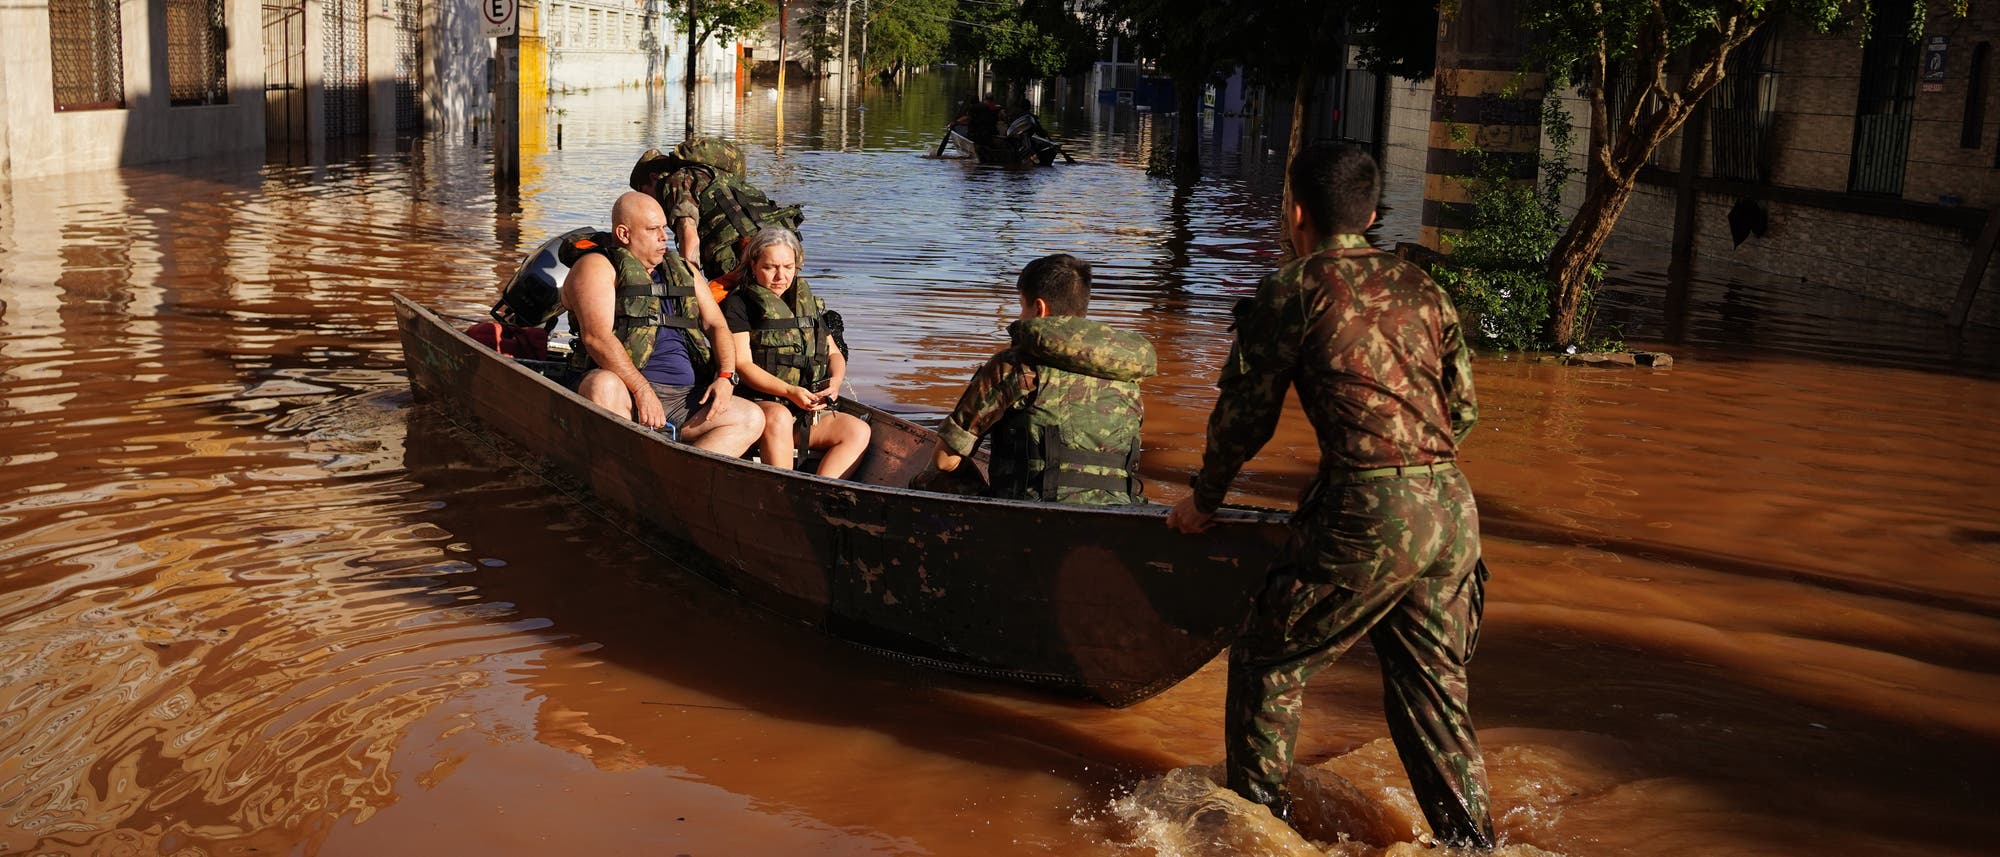 Menschen werden auf Grund der Überschwemmungen durch Mitarbeiter der brasilianischen Streitkräfte mit einem Boot evakuiert. In den Straßen stehen braune Fluten, immerhin scheint gerade die Sonne.